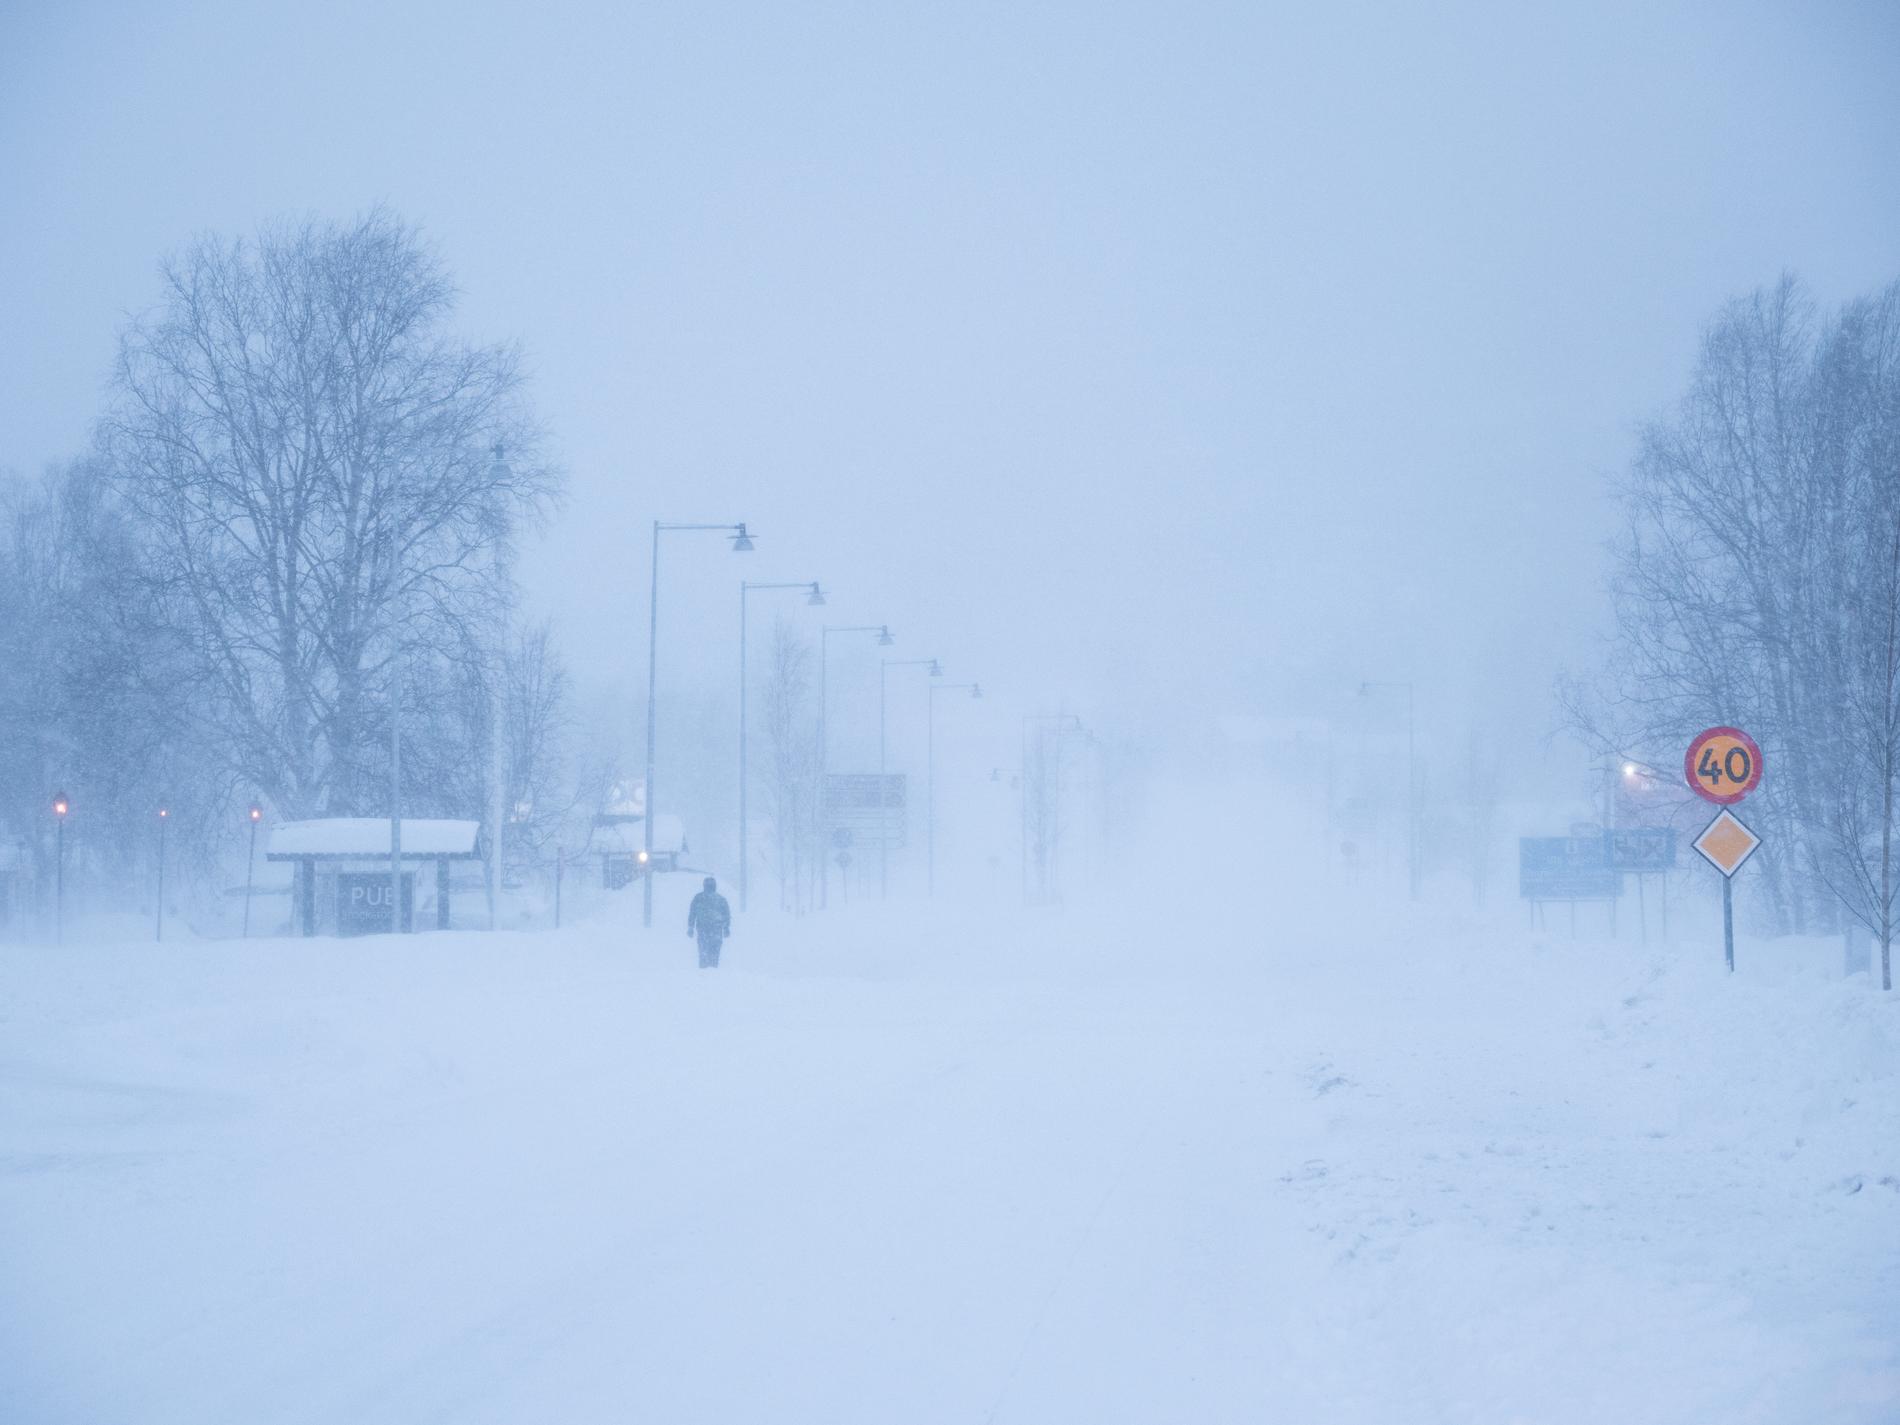 Stormen som dragit in över norra Sverige lämnade tusentals hushåll utan el. Arkivbild från Hemavan.